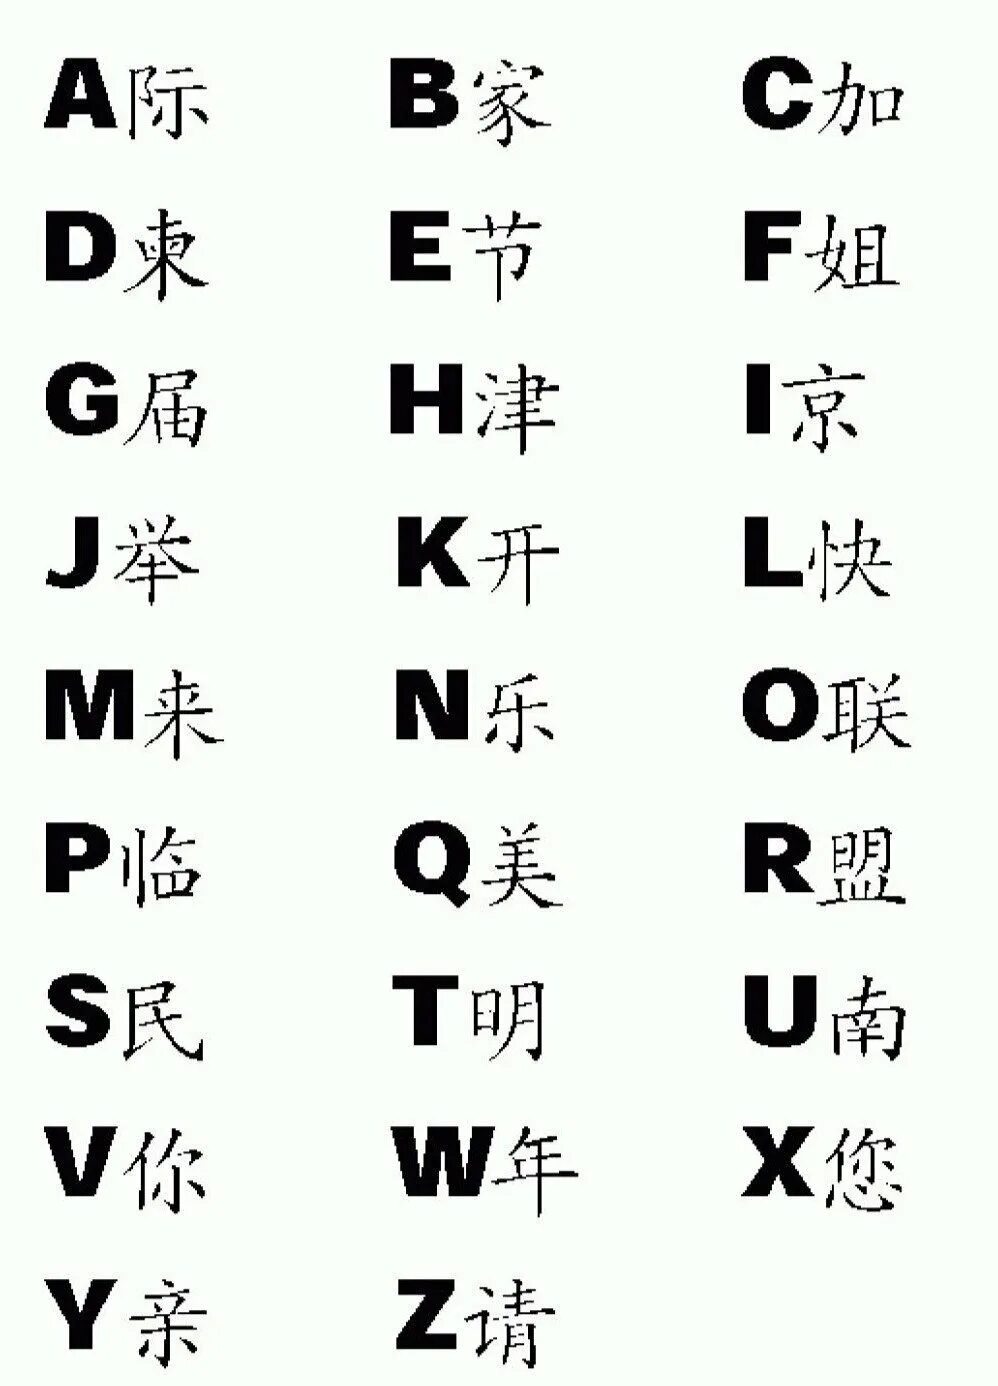 Какие есть китайские буквы. Алфавит китайского языка с переводом на русский. Китайские китайский алфавит. Китайский алфавит с переводом на русский для начинающих. Алфавит китайский с переводом на русский и буквами.